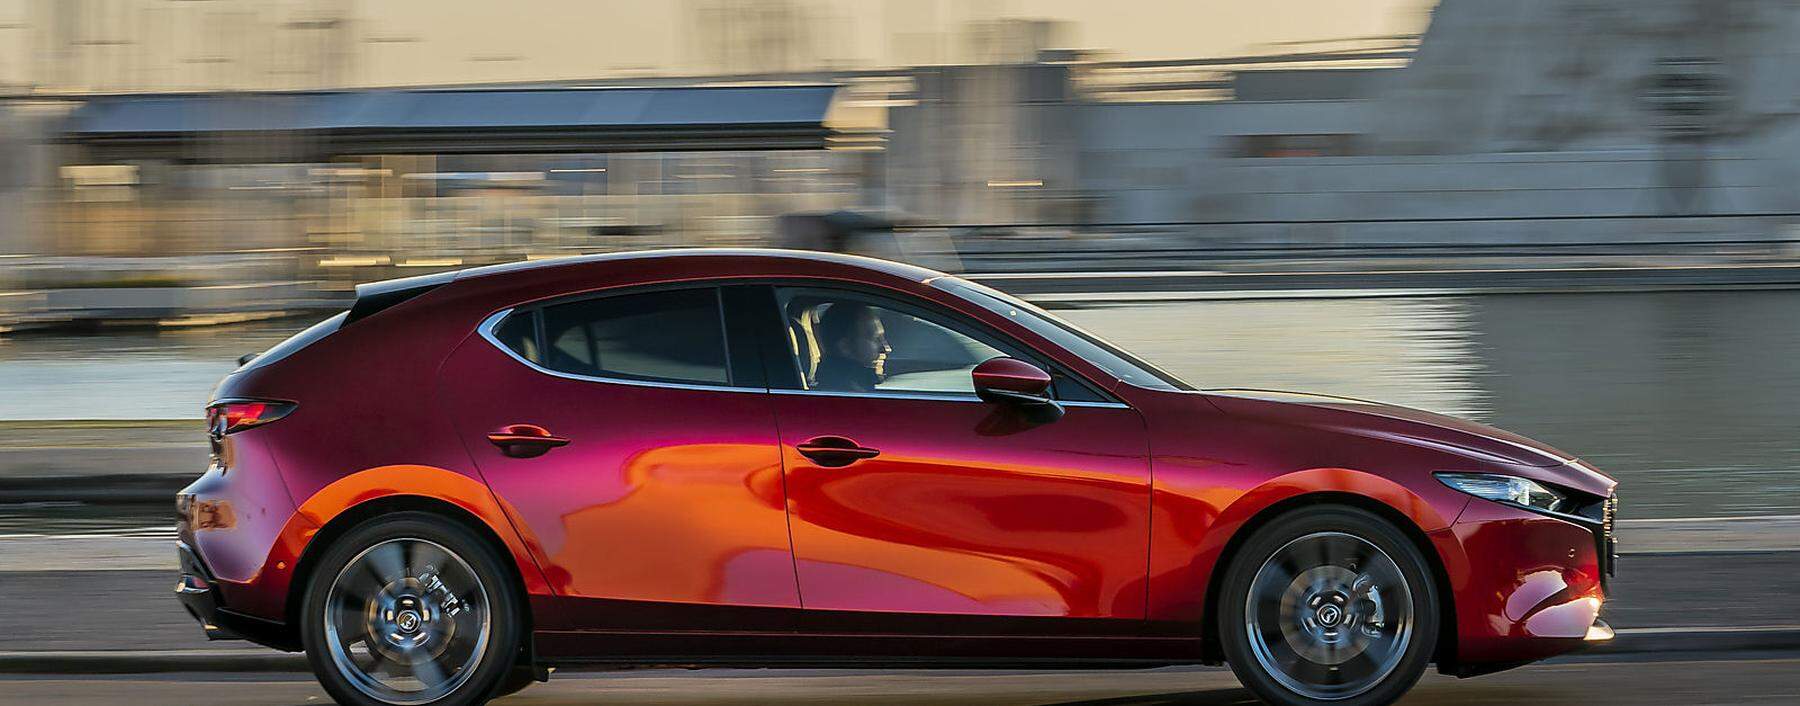 Mazda3: die neueste Interpretation der Mazda Formensprache